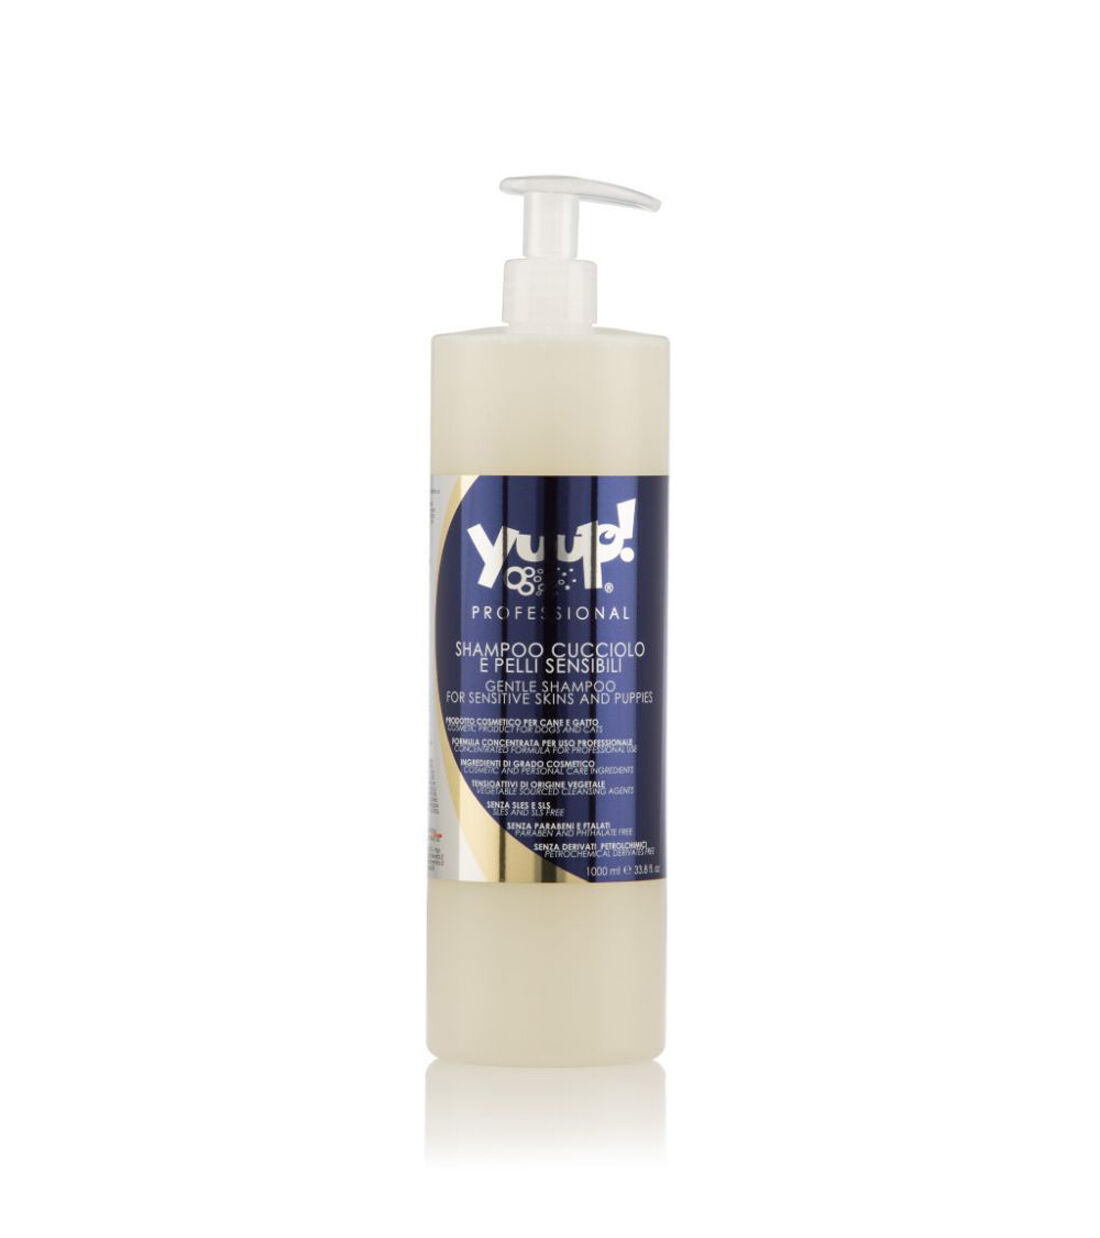 Yuup! Professional Shampoo für Welpen und empfindliche Haut